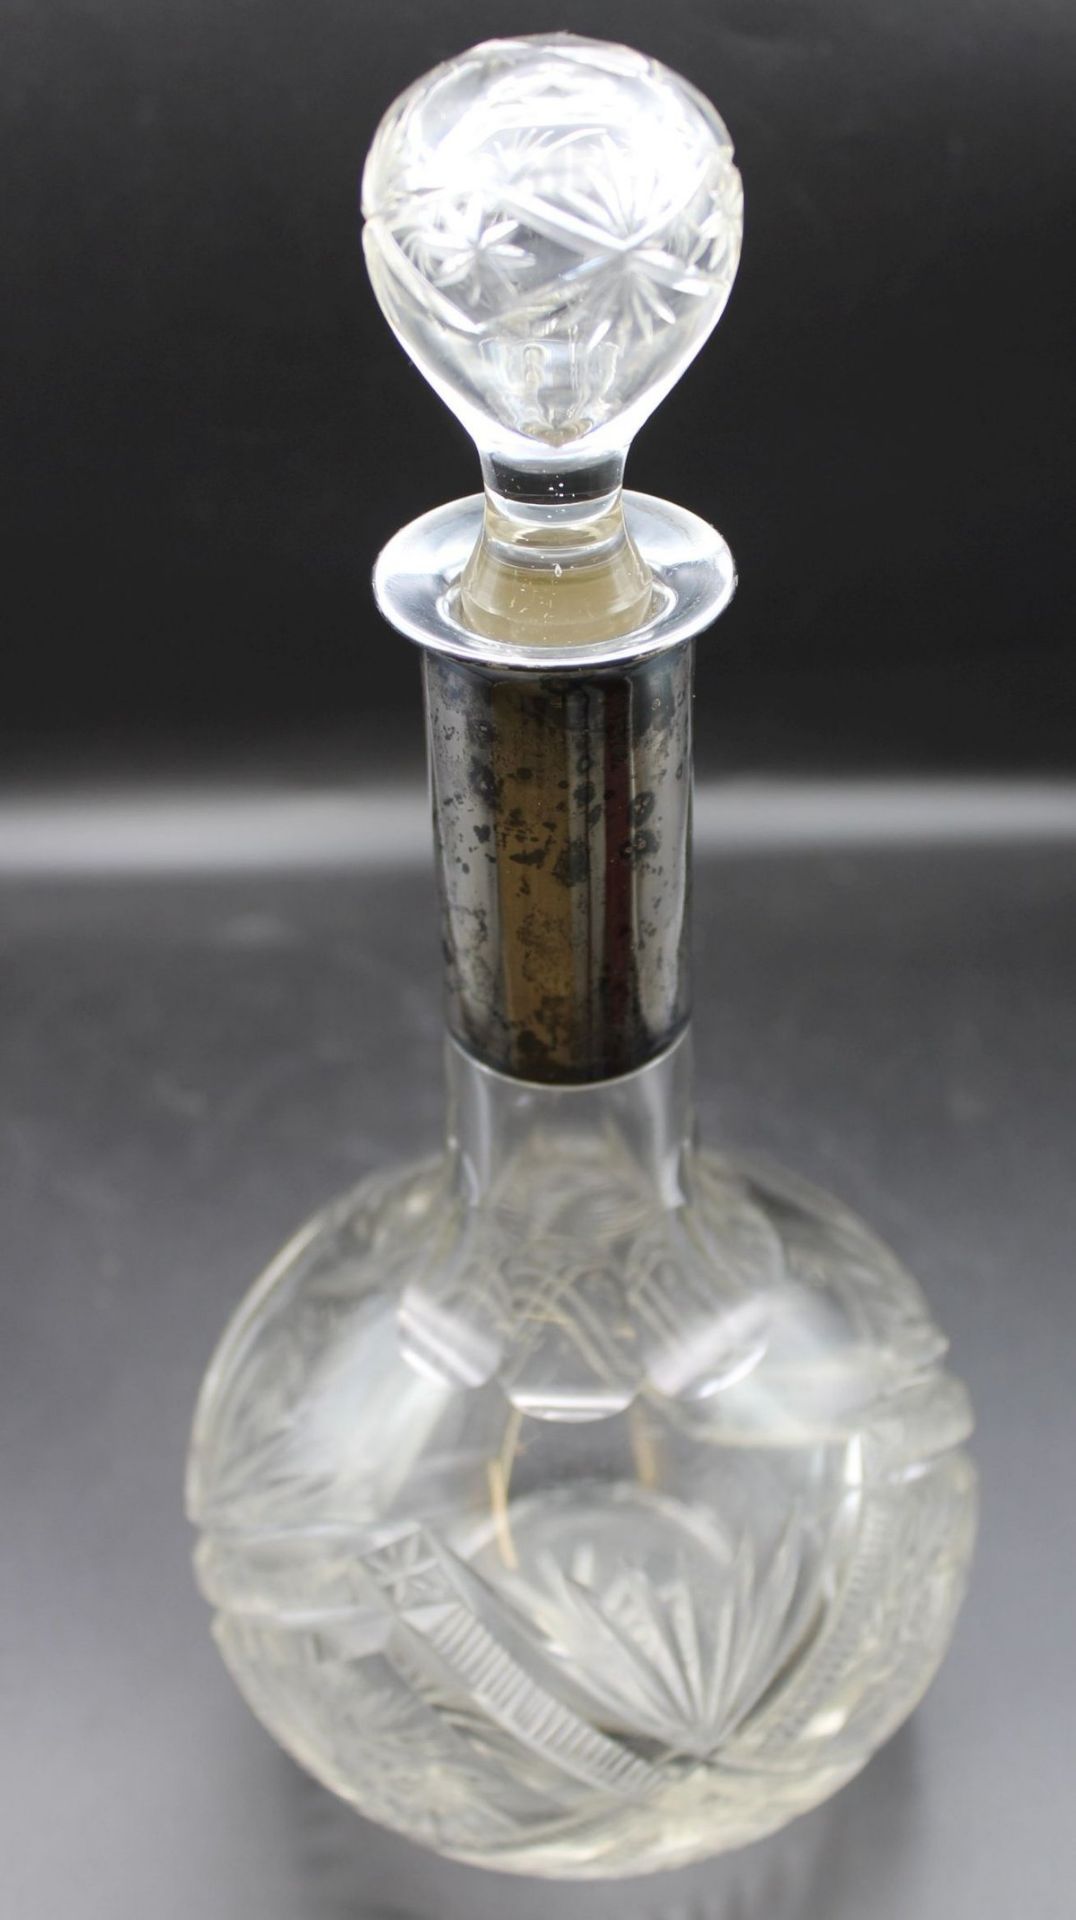 bauchige Karaffe, um 1900, Kristall beschliffen, Silbermontur -800-, H-30cm. - Bild 3 aus 3